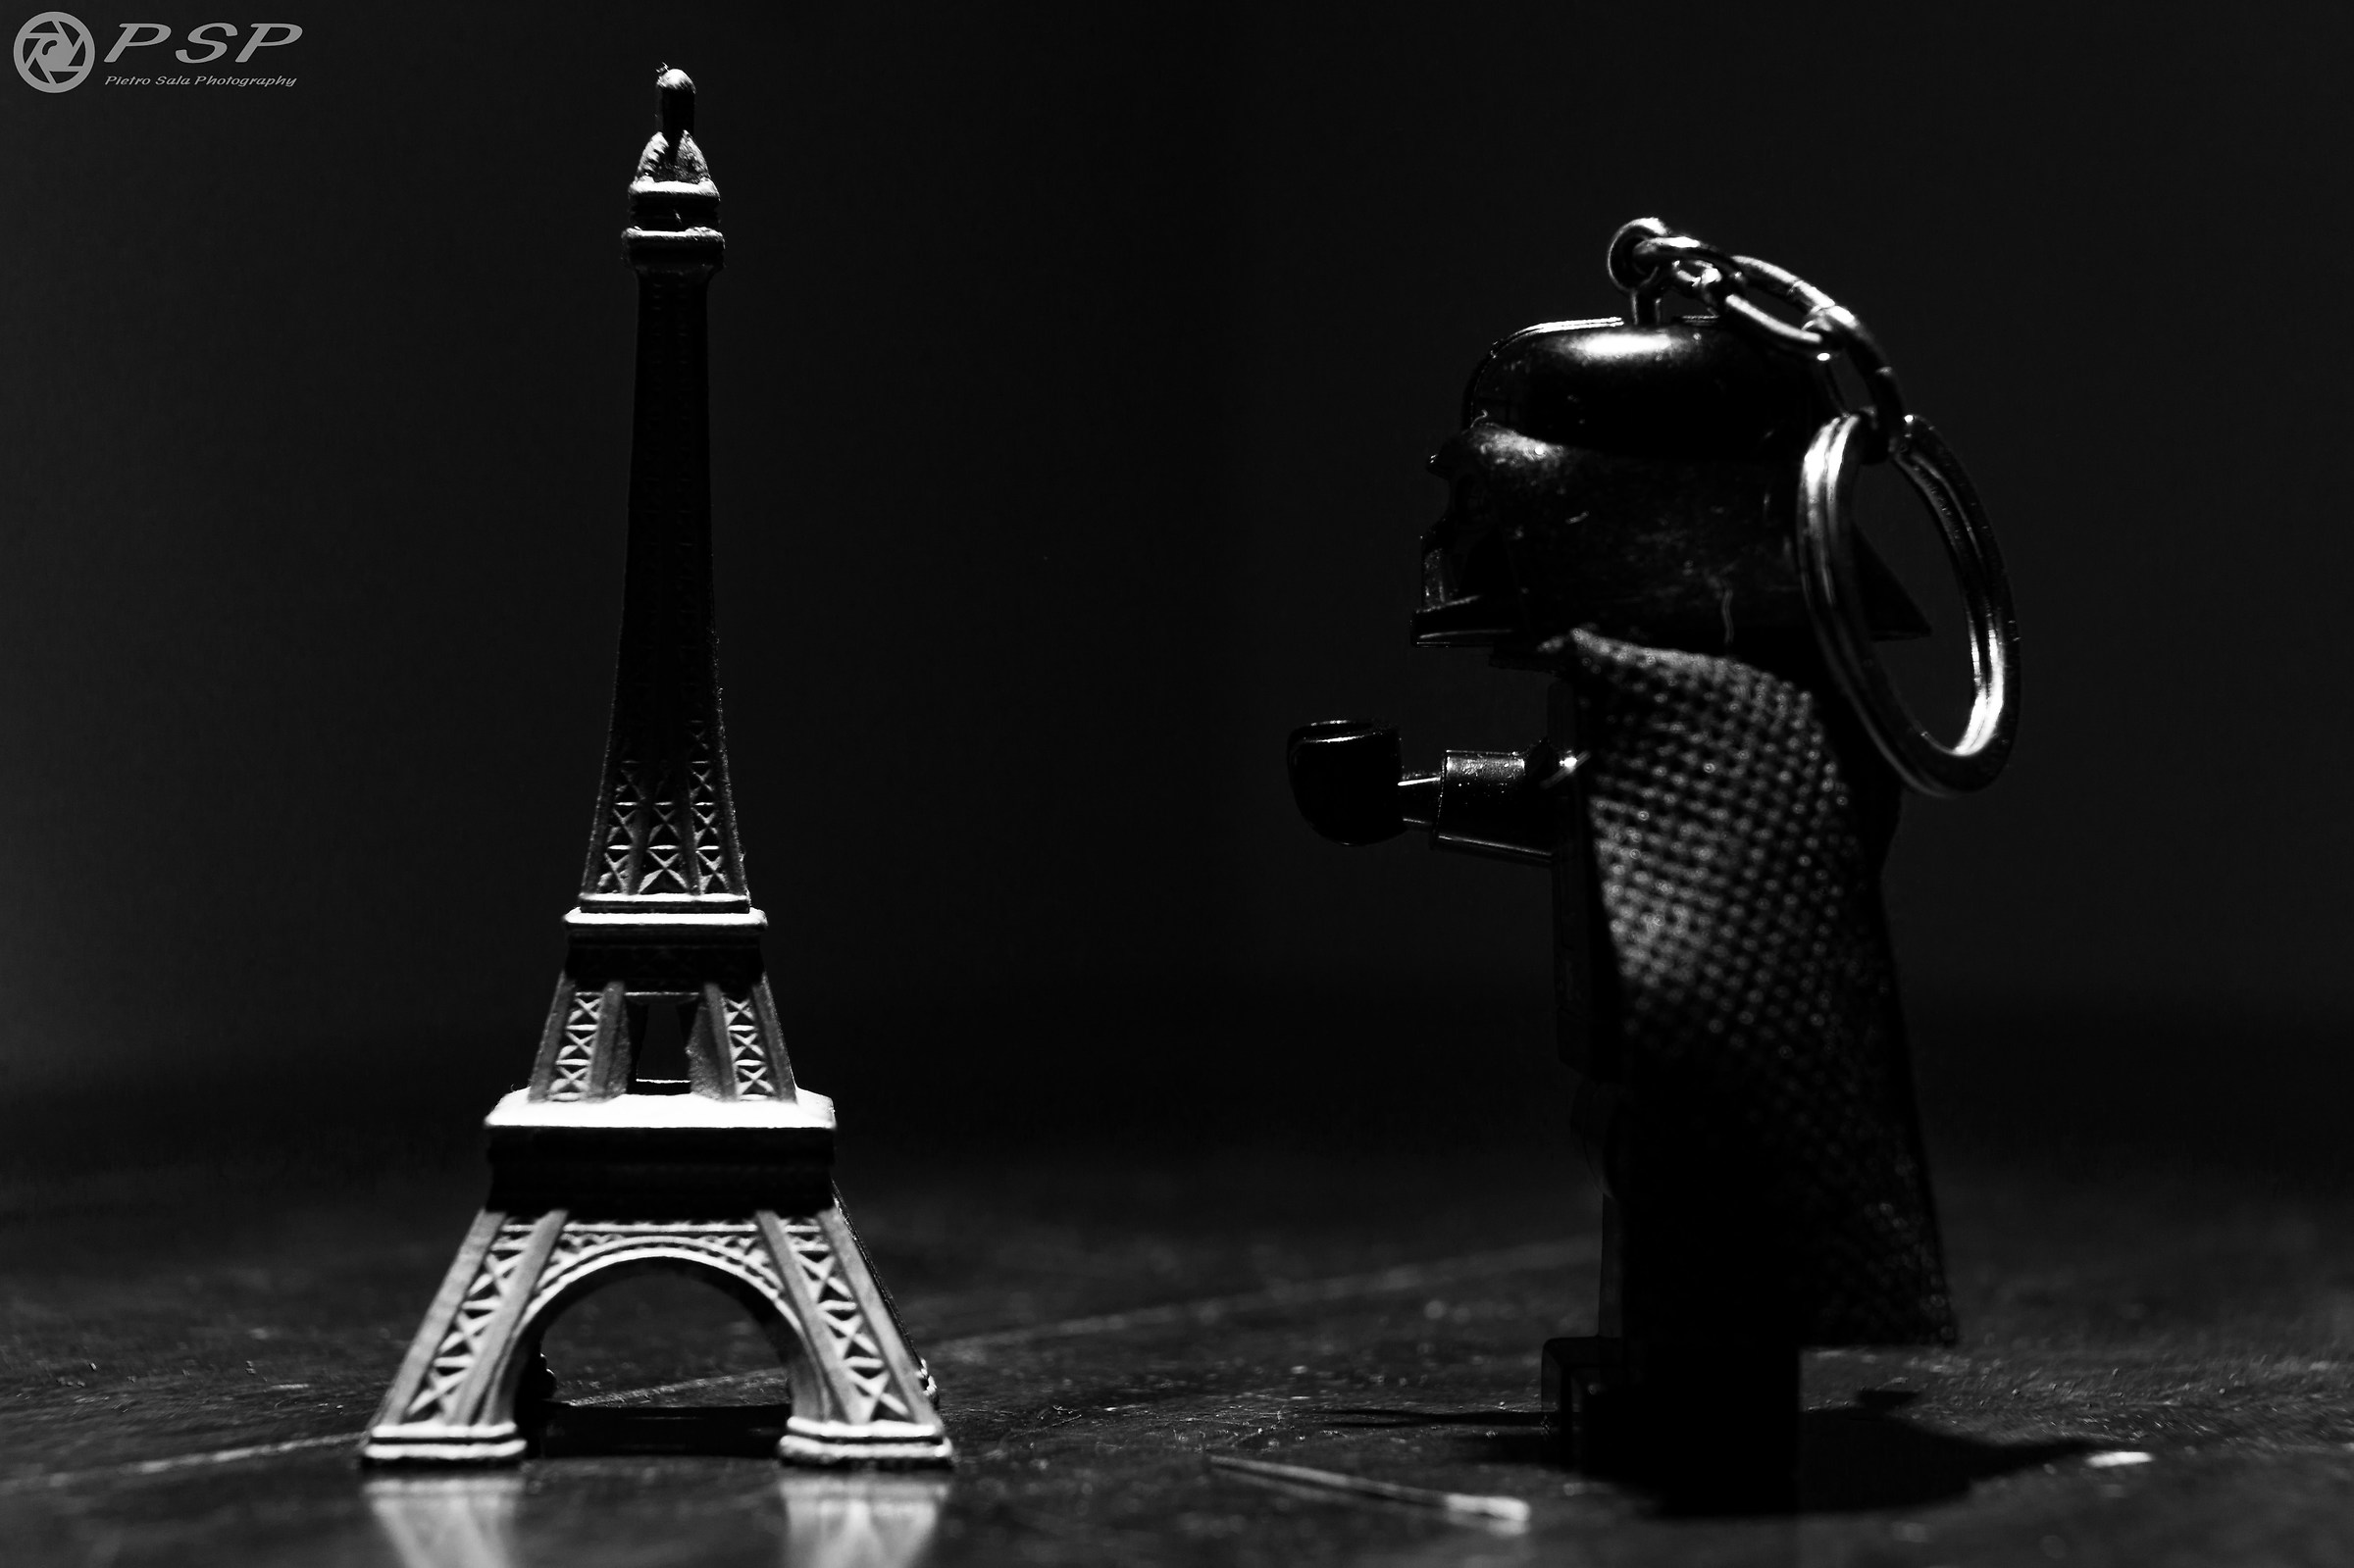 The Dark Side conquers Paris...